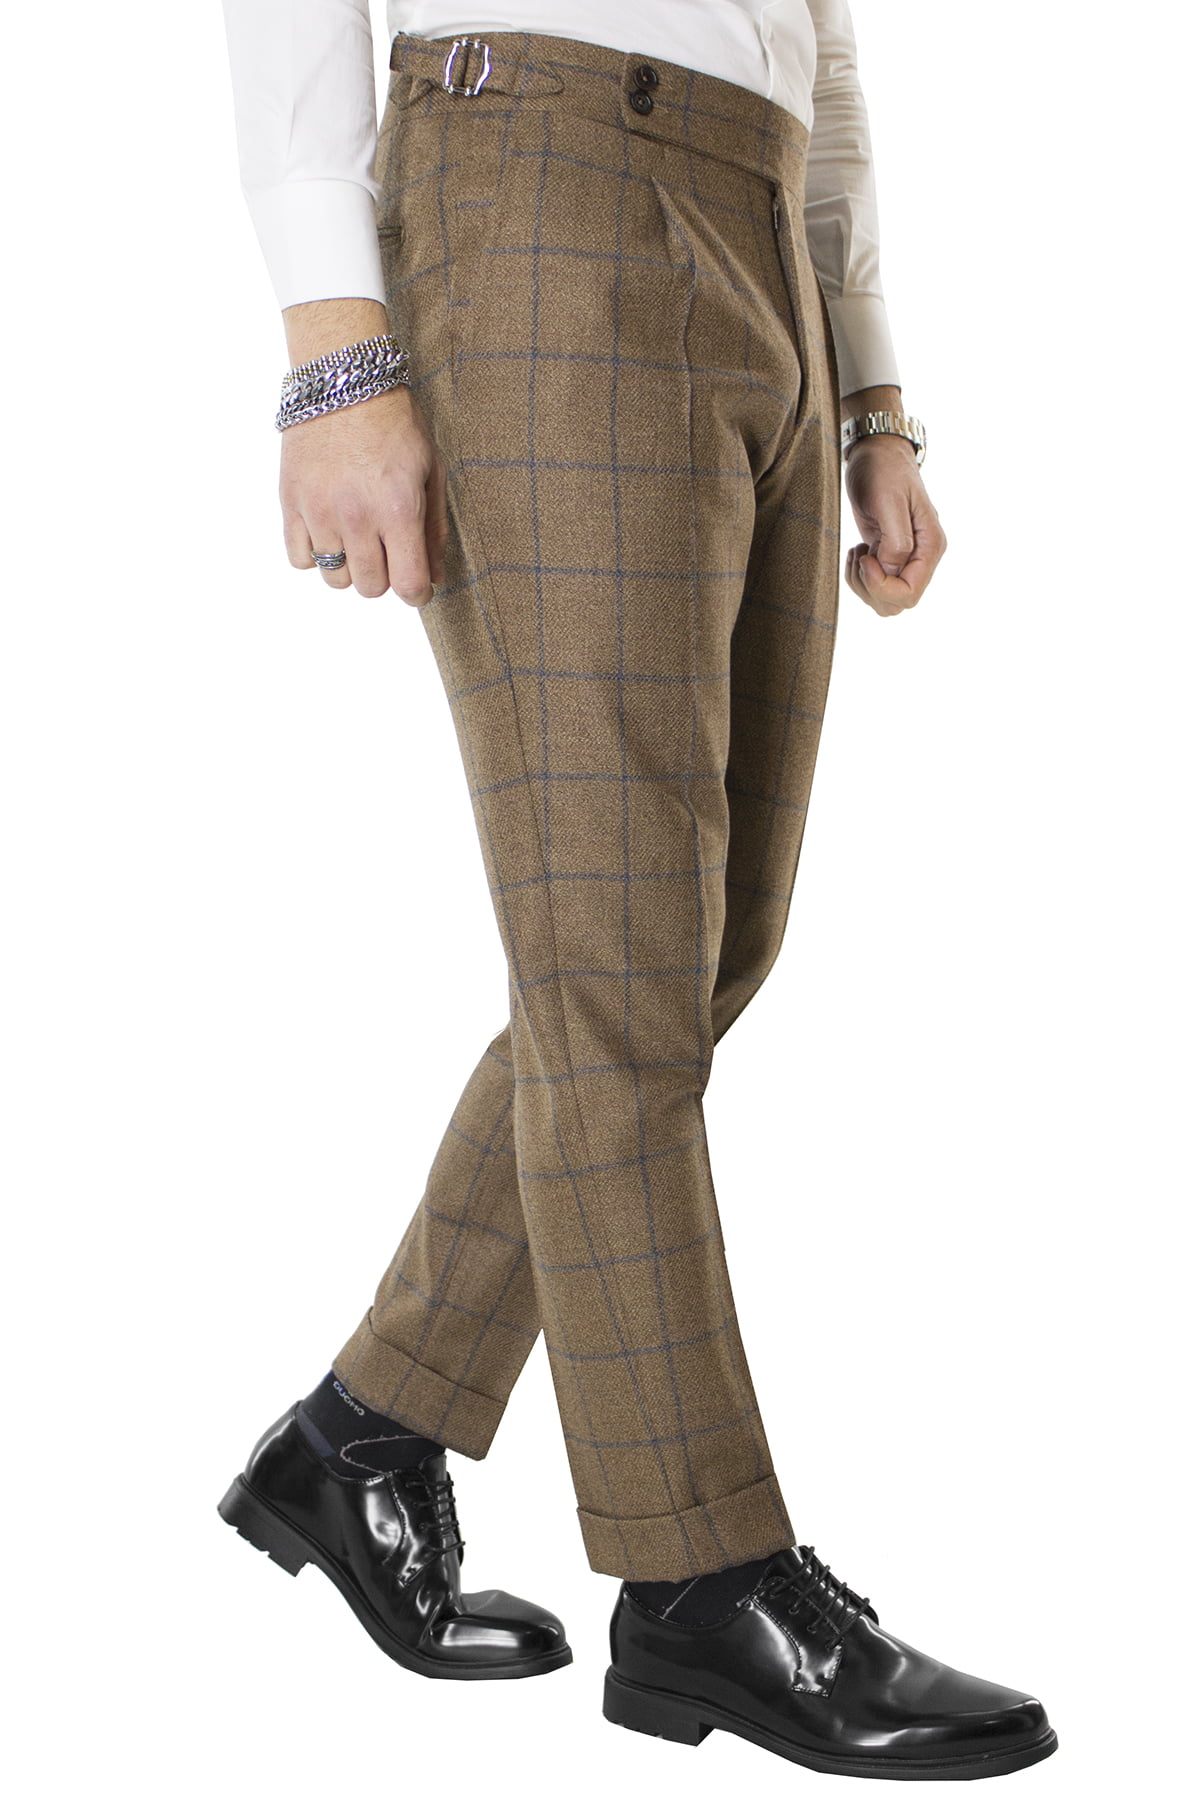 Pantalone uomo marrone fantasia quadri in lana vita alta con pinces e fibbie laterali vitale barberis canonico